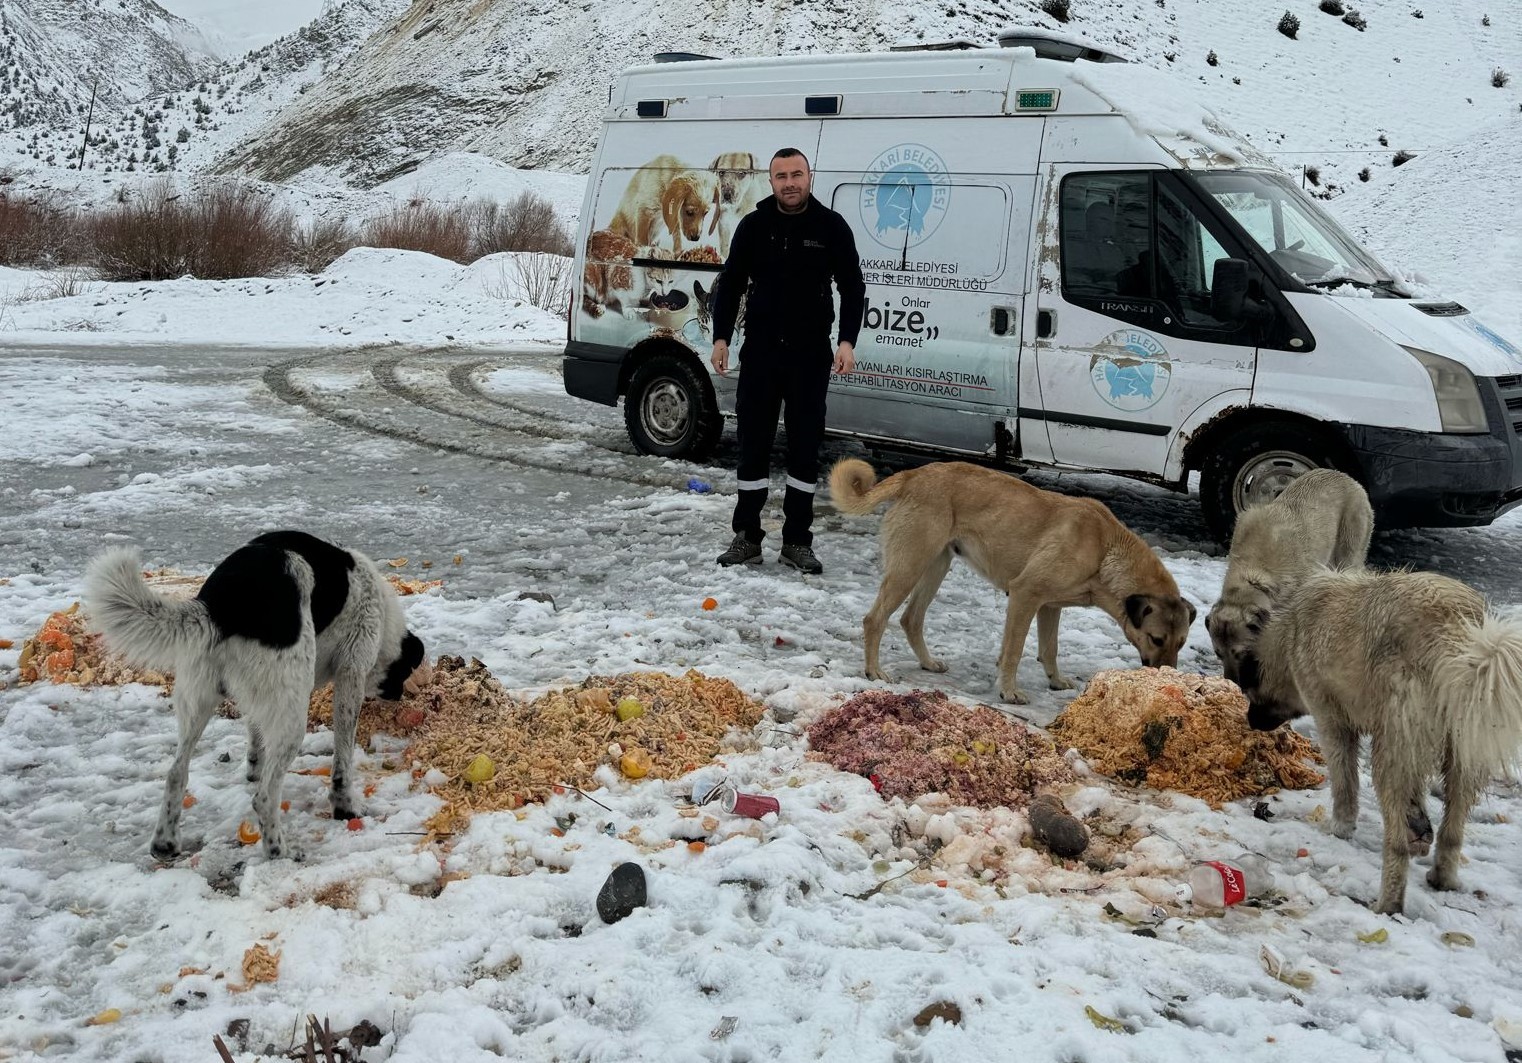 Hakkari'de sokak hayvanlarına yiyecek bırakıldı